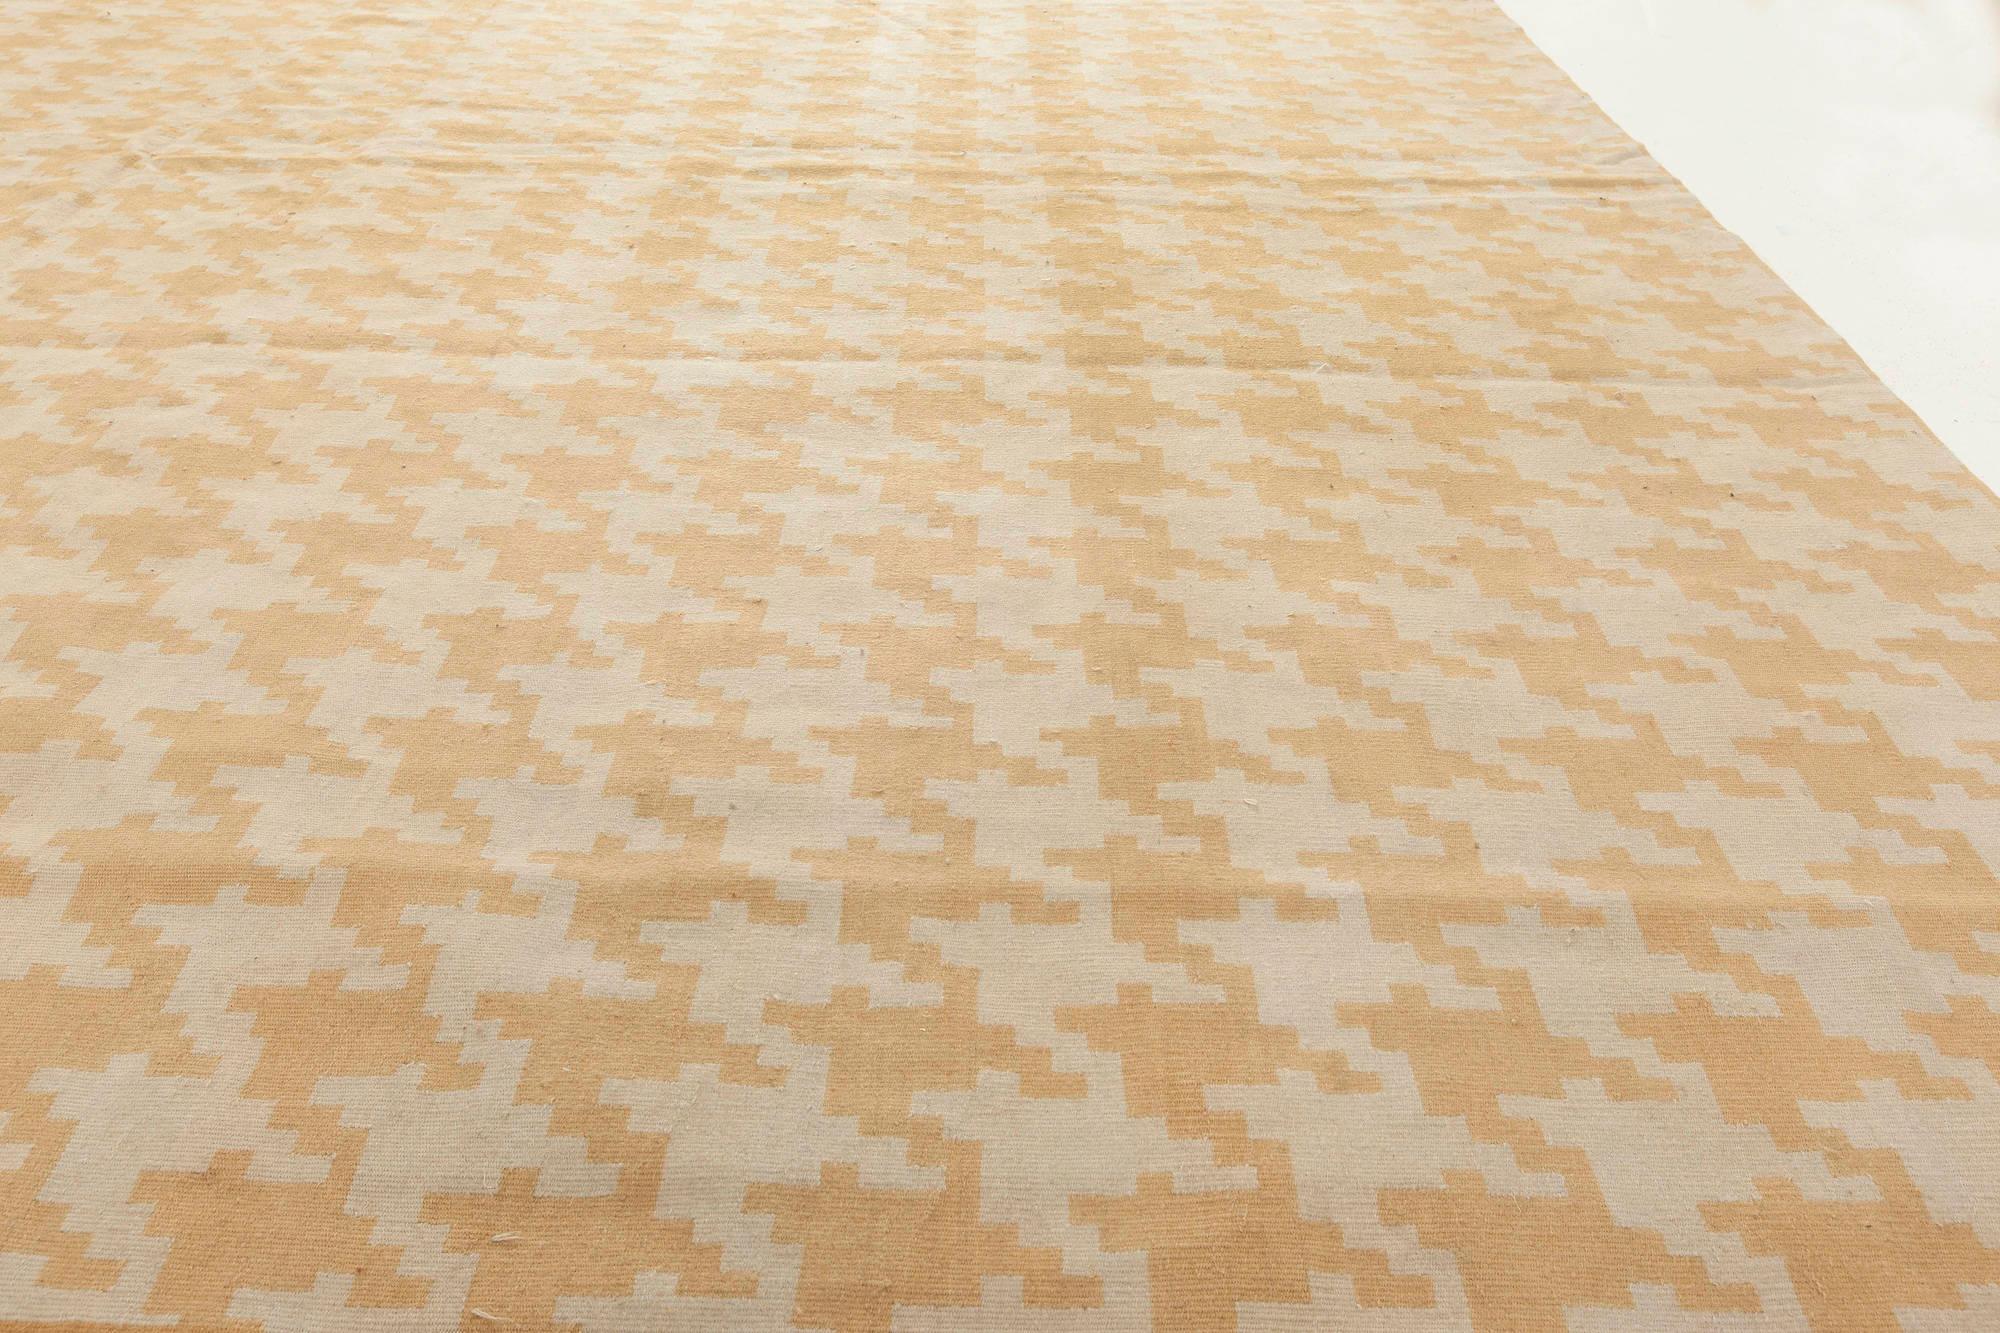 Modern Beige flat-weave rug by Jeffrey Bilhuber for Doris Leslie Blau
Size: 9'7